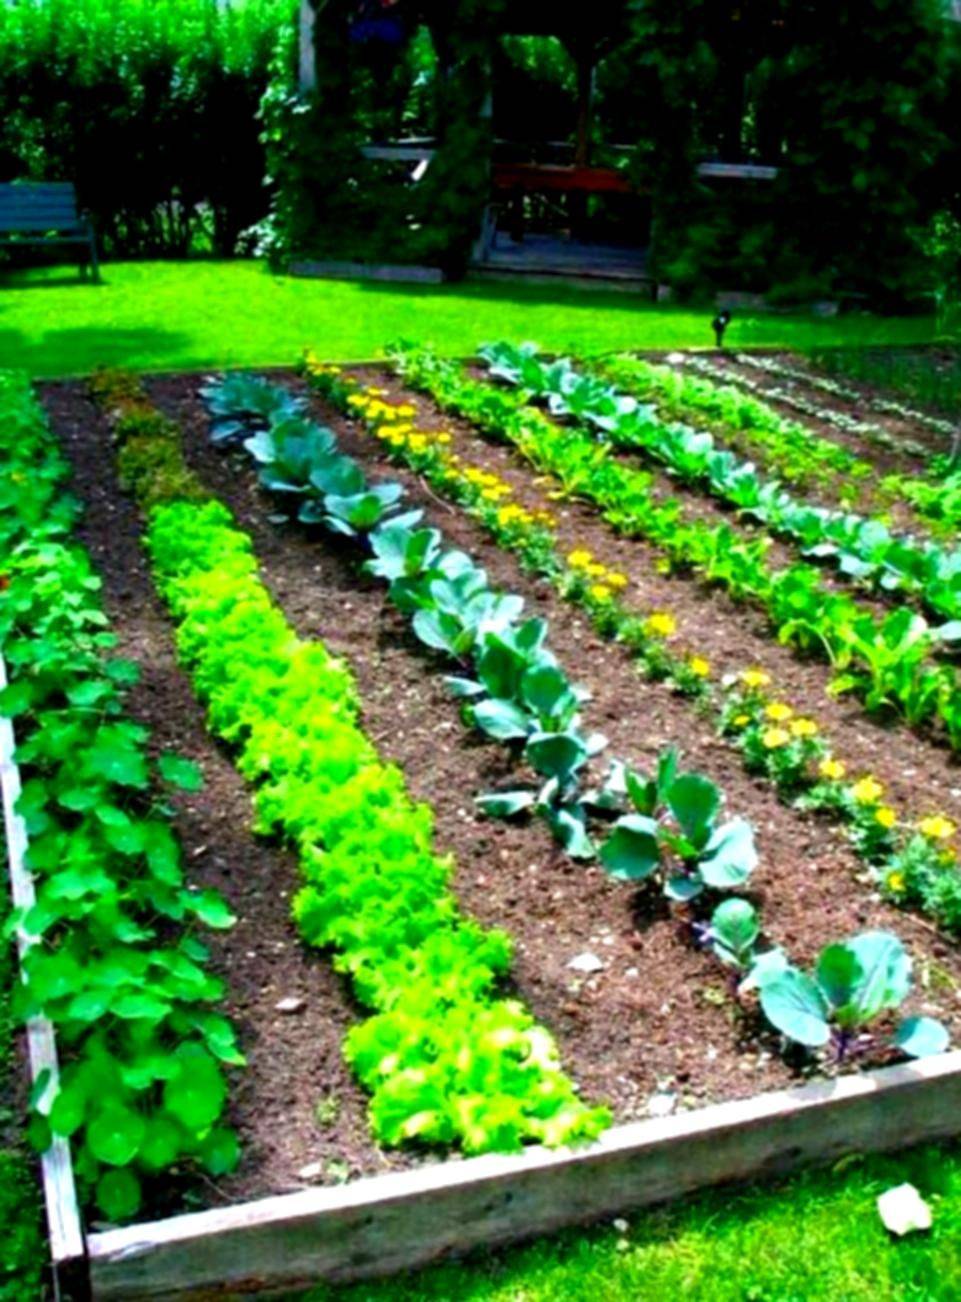 Easy Vegetable Home Gardening Ideas